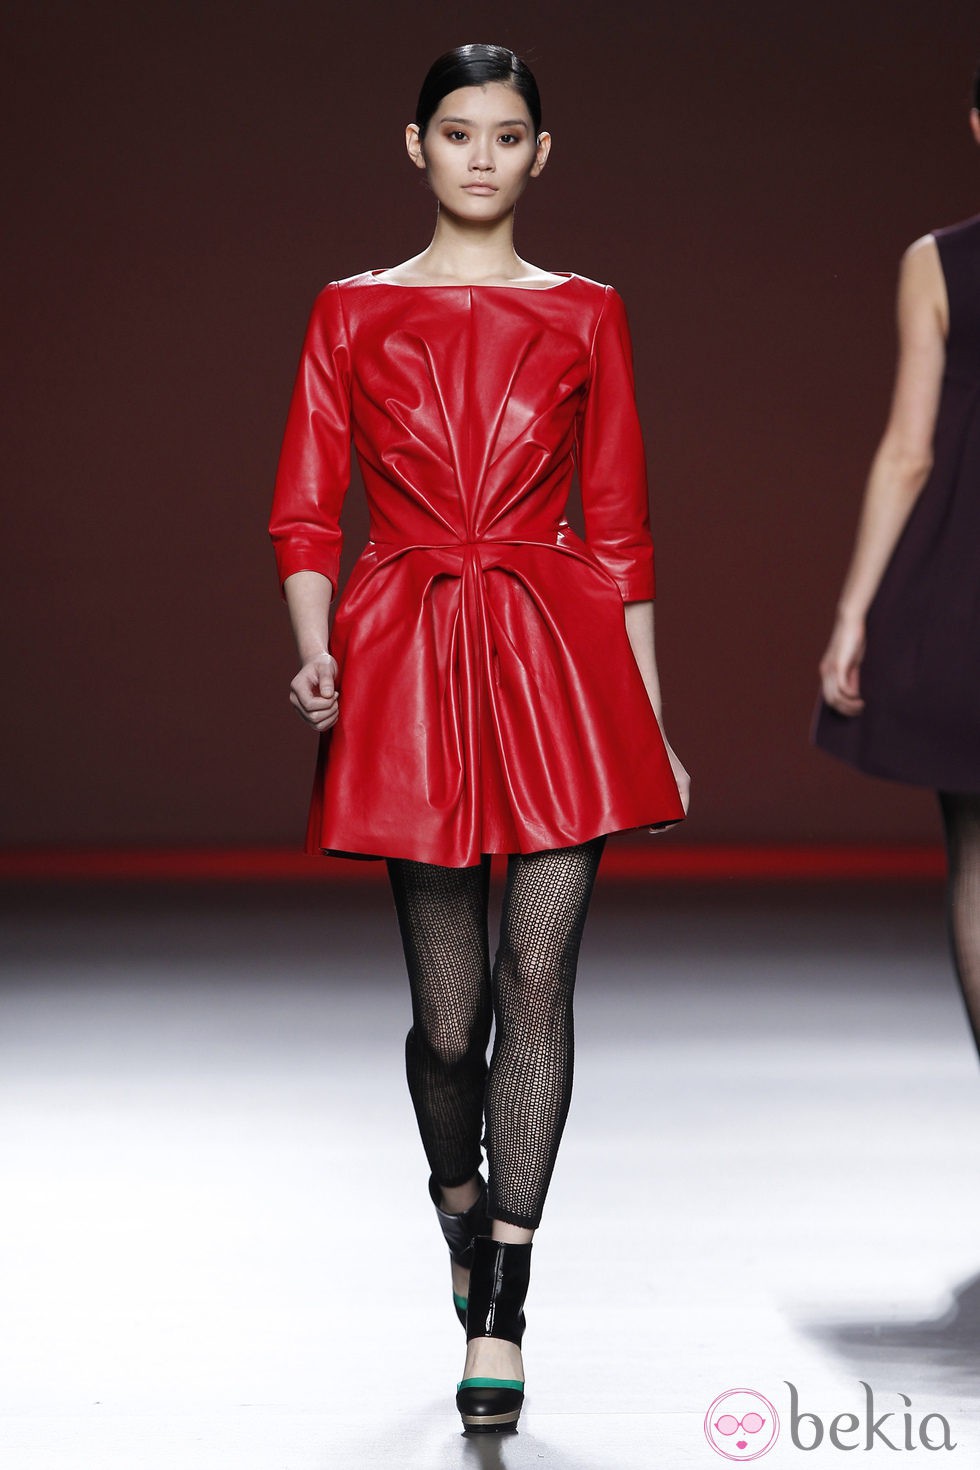 Vestido rojo de cuero de la colección otoño/invierno 2012/2013 de Amaya Arzuaga